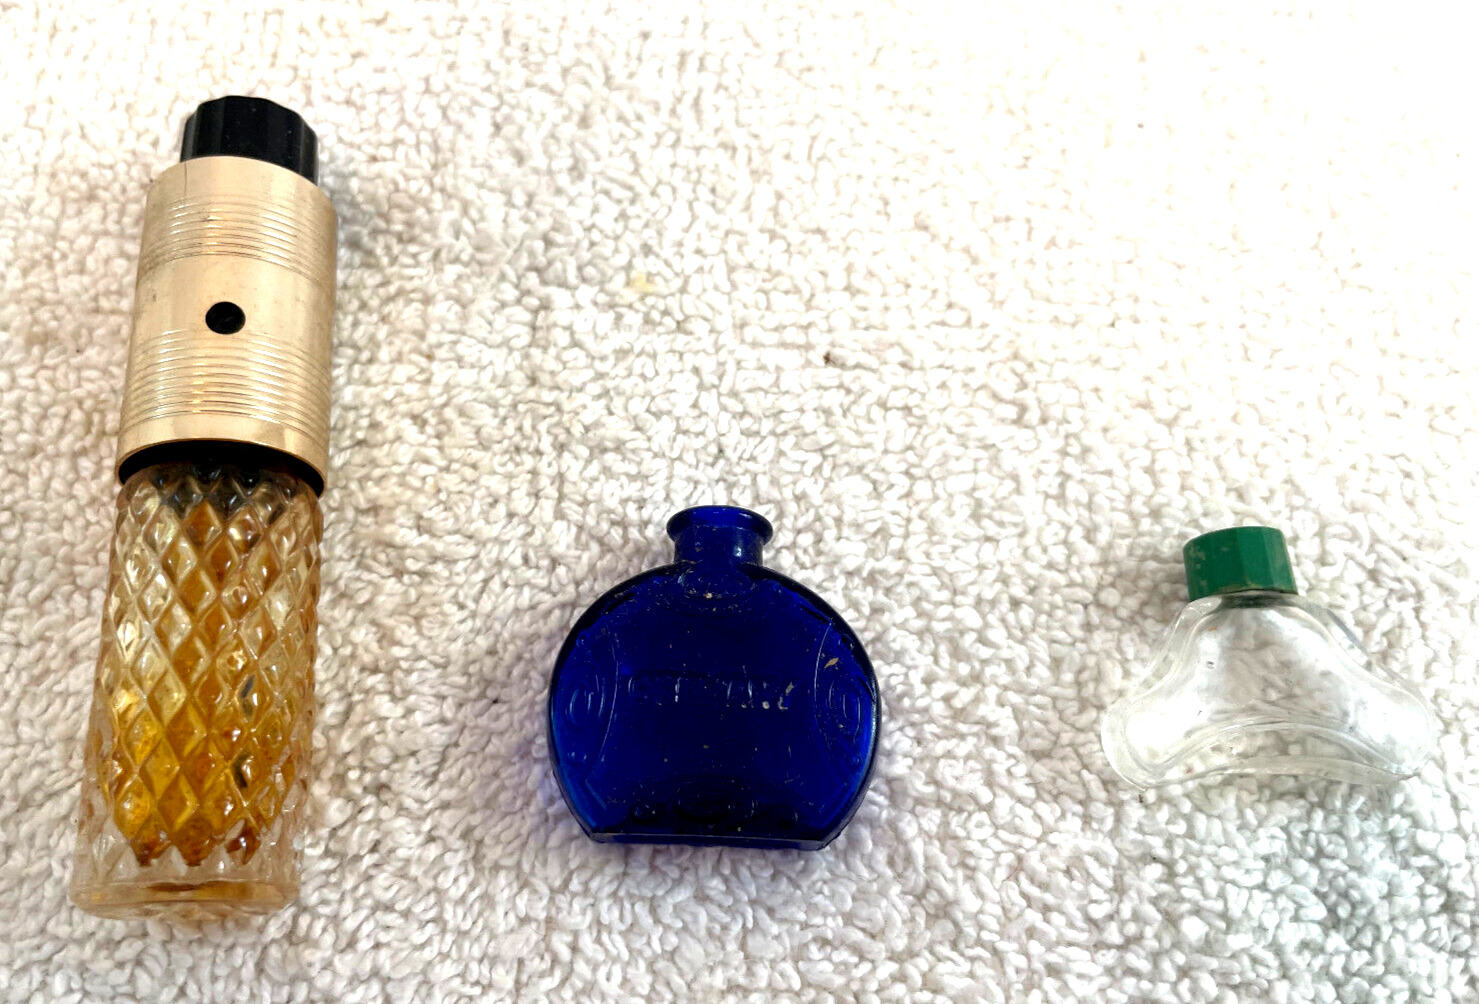 3 VTG German & English Glass Perfume Bottles Cobalt Blue & Locking Atomizer